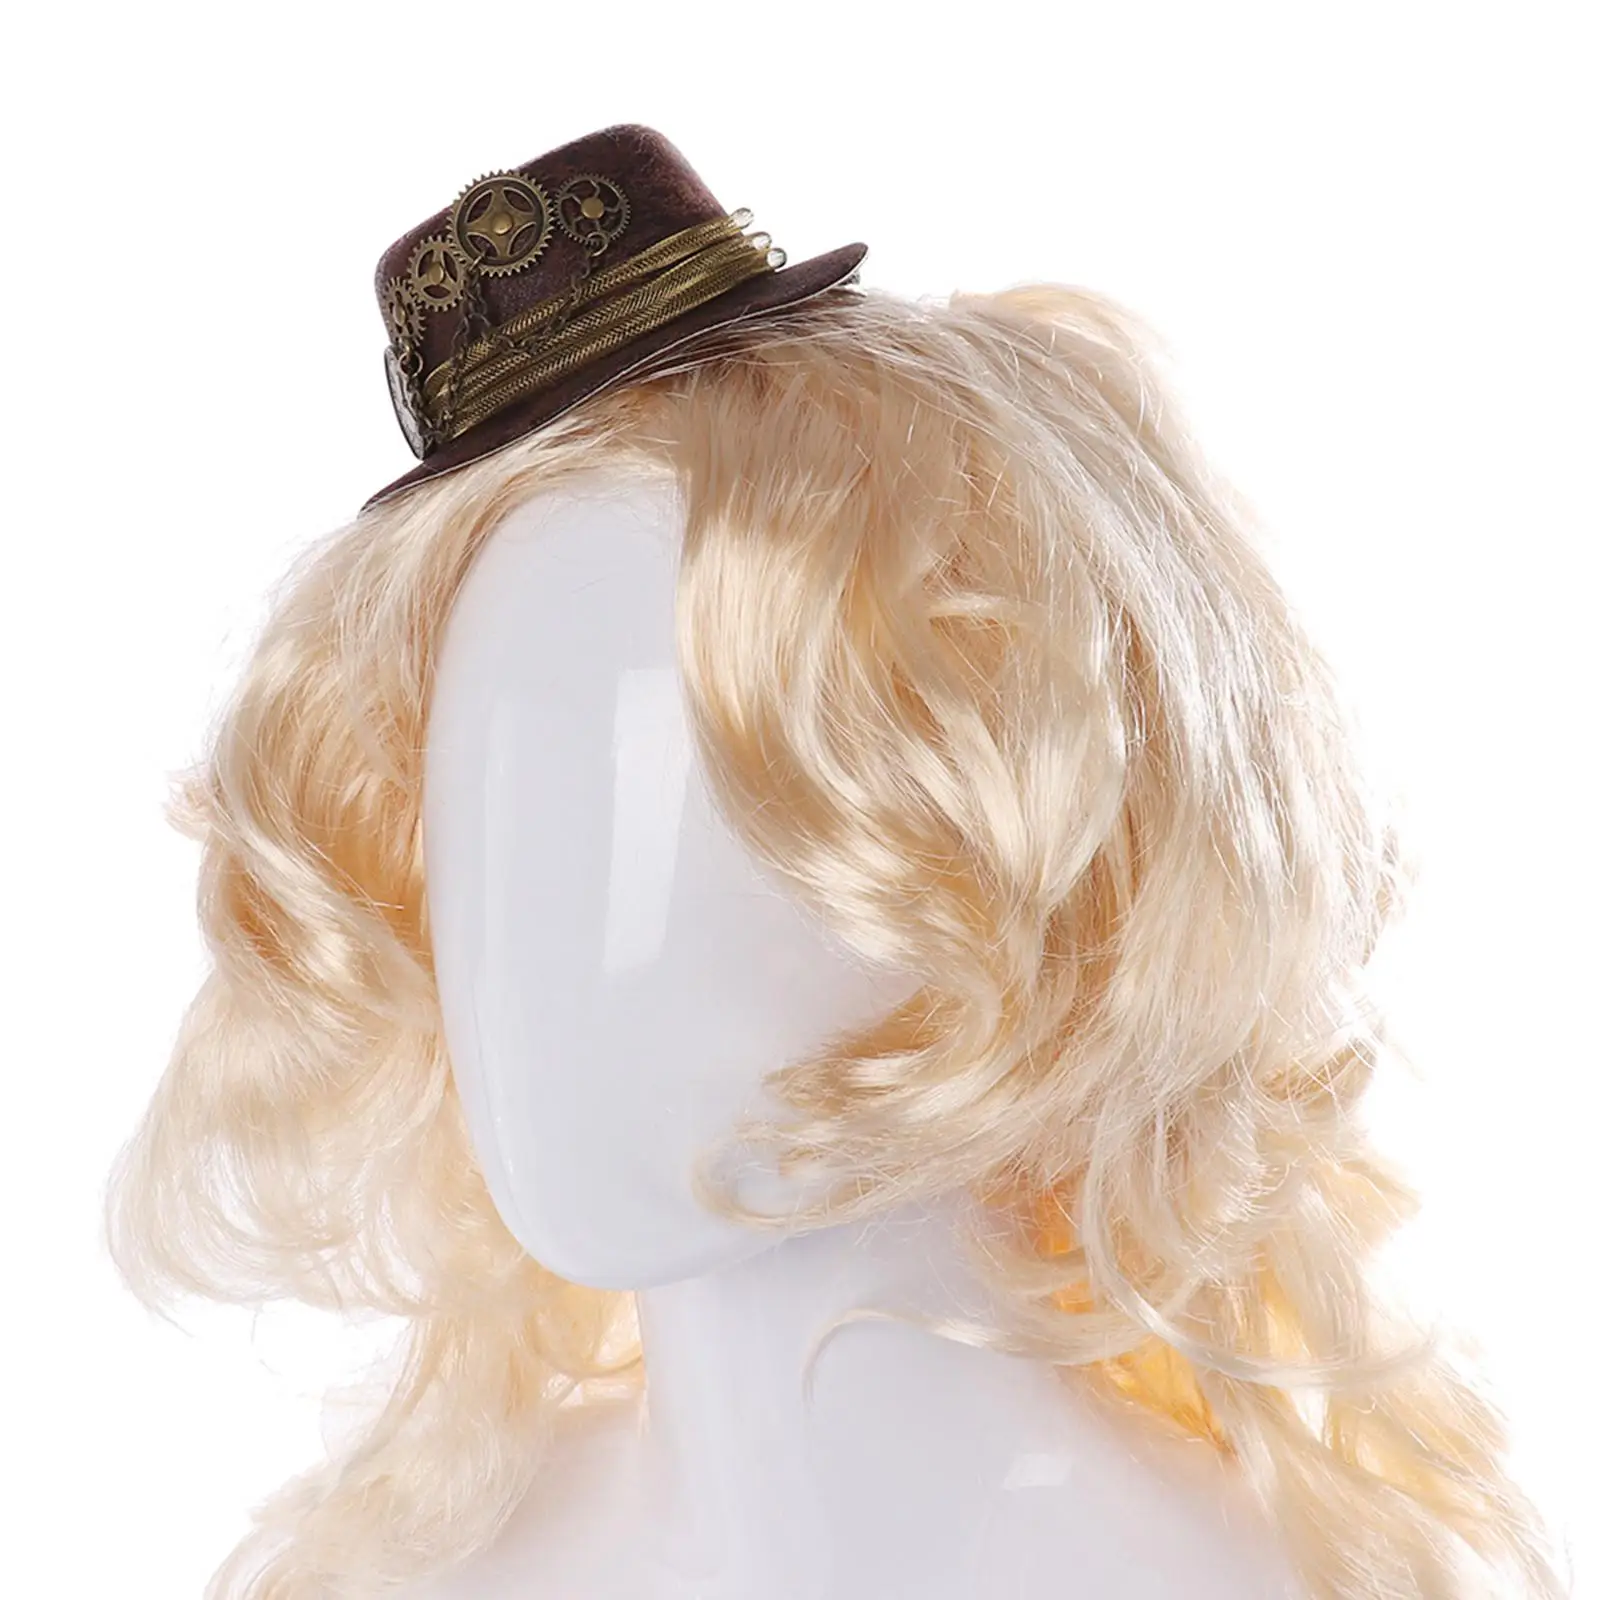 Woman Mini Steampunk Top Hat, Head Gear Hair Clip Industrial Age Accessories